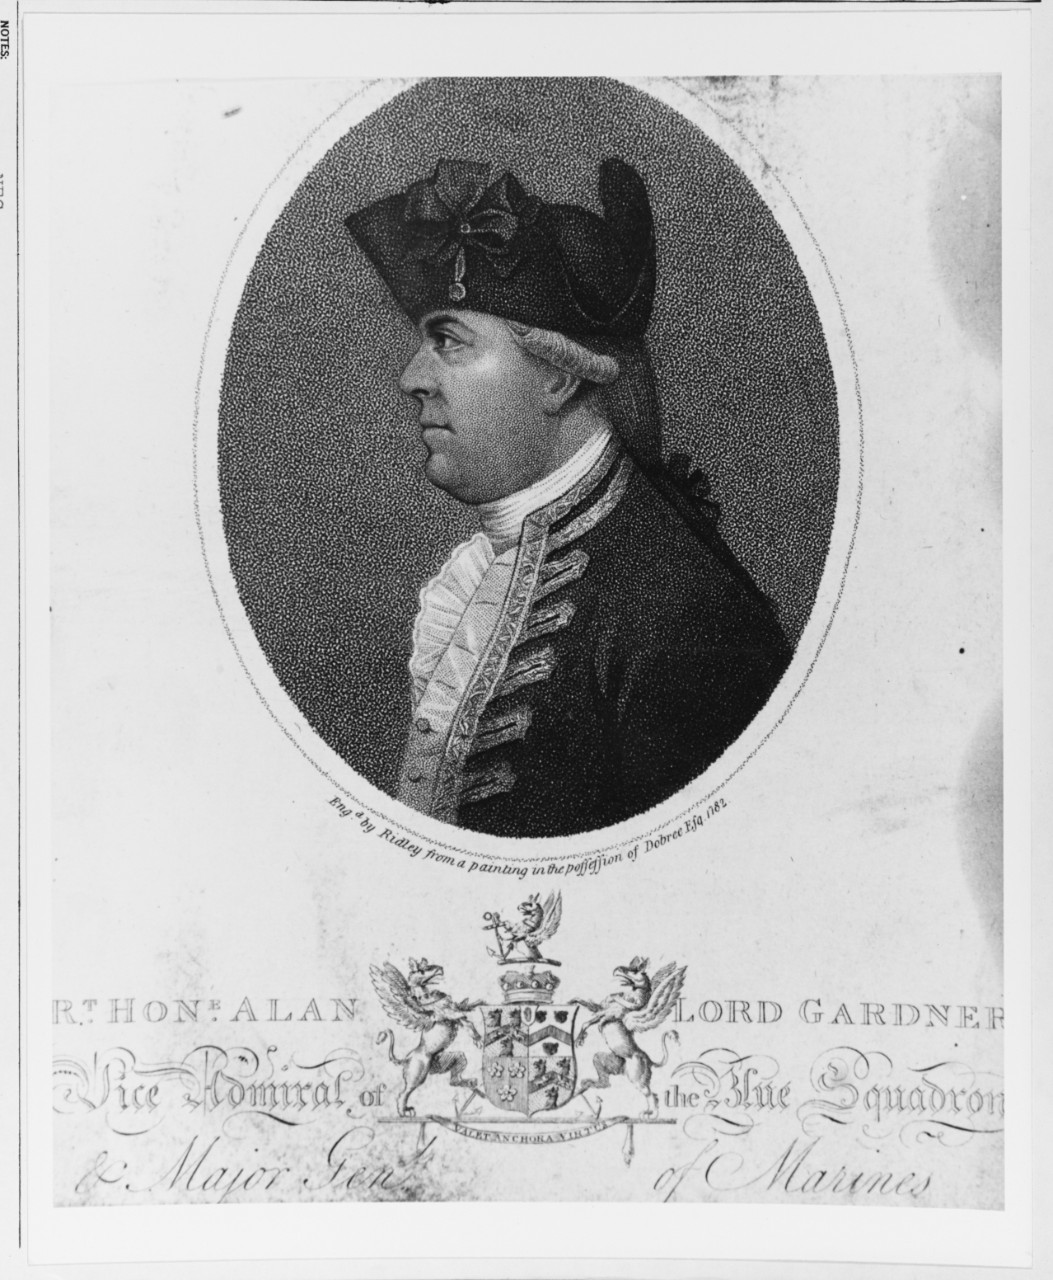 Admiral Alan Gardner, R.N. (1742-1809)